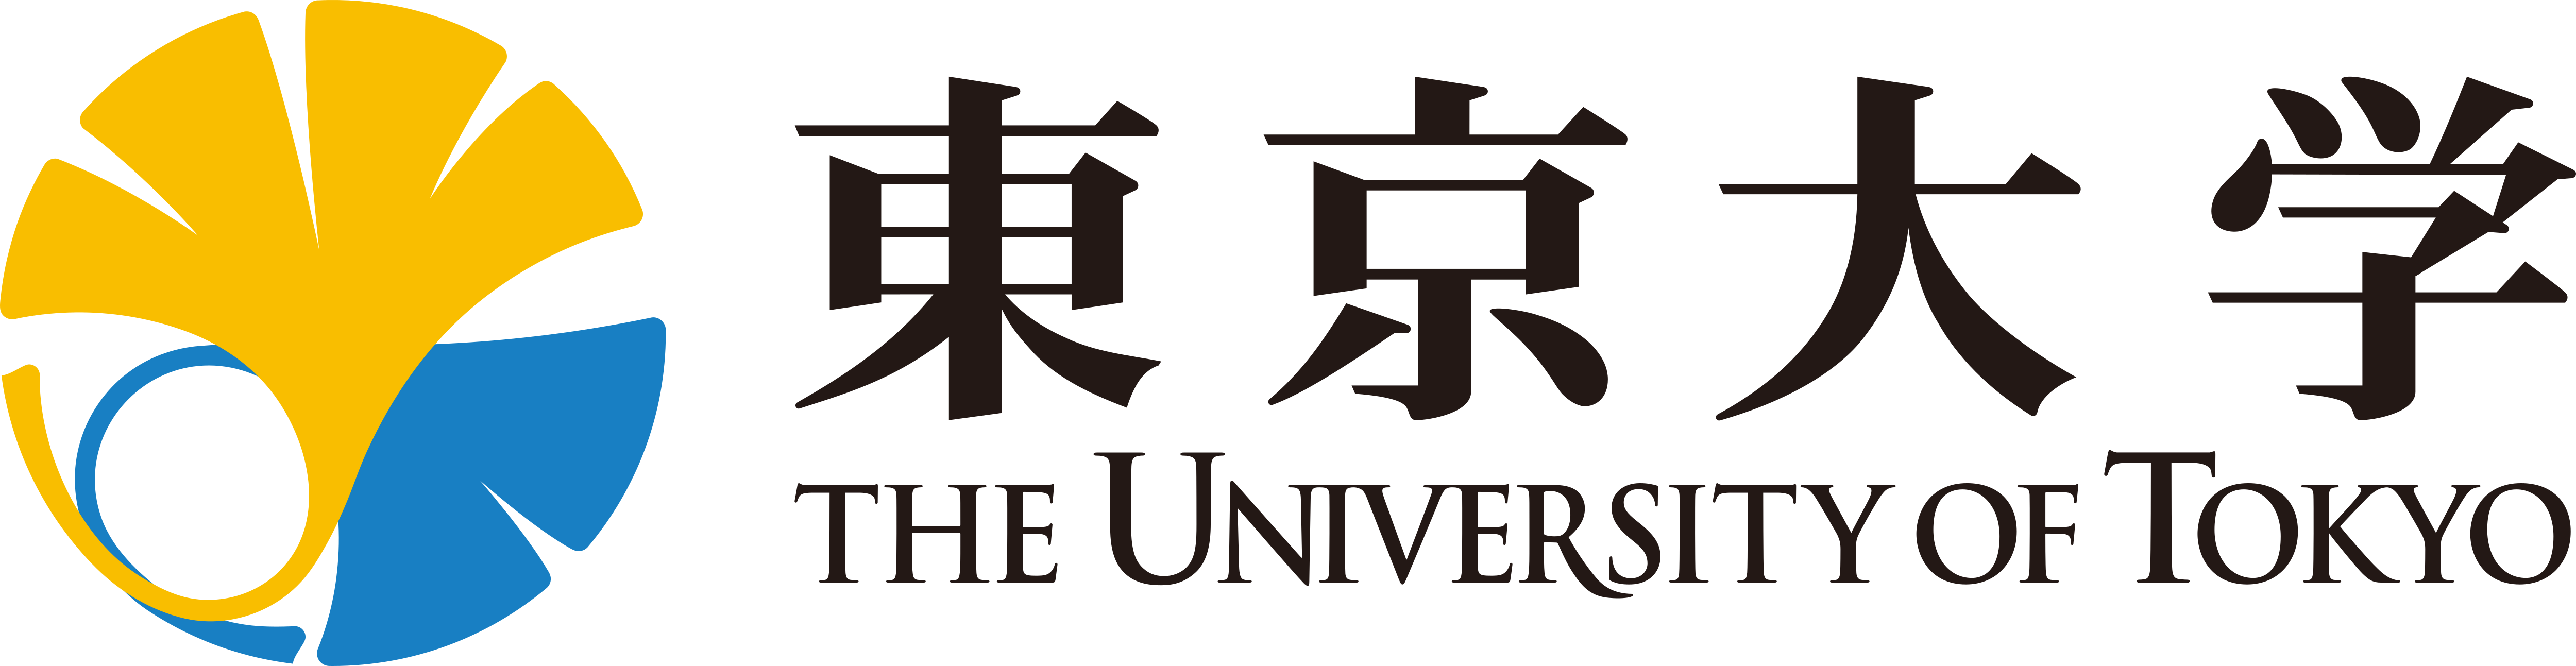 Universidad de Tokio - Descarga de logotipos